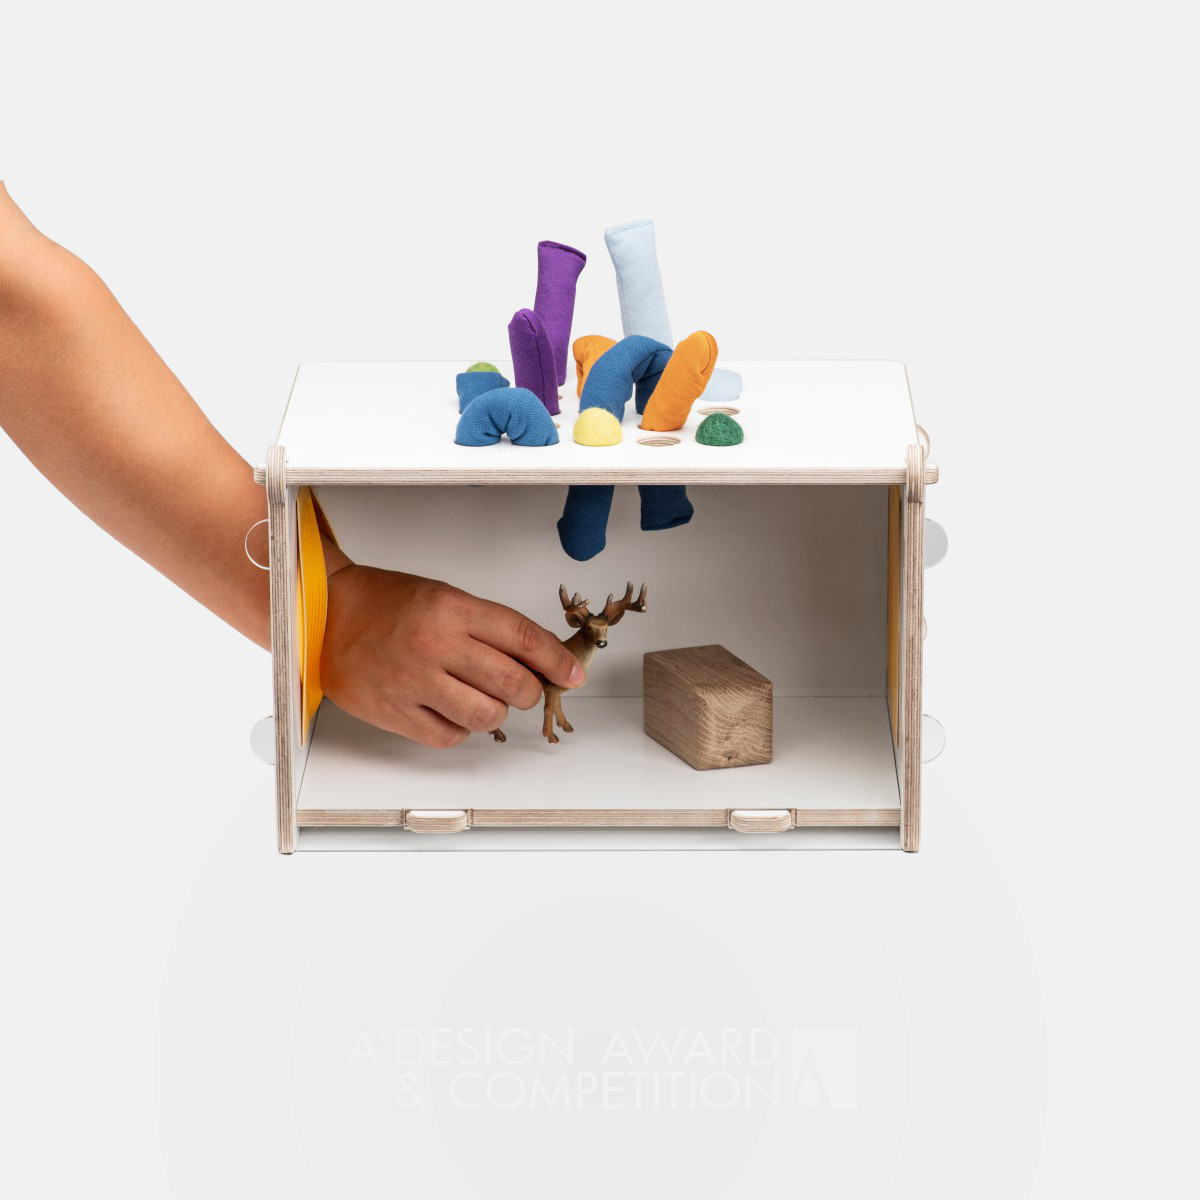 감각 추측 상자 Mirabu: 아이들의 상상력을 자극하는 놀이